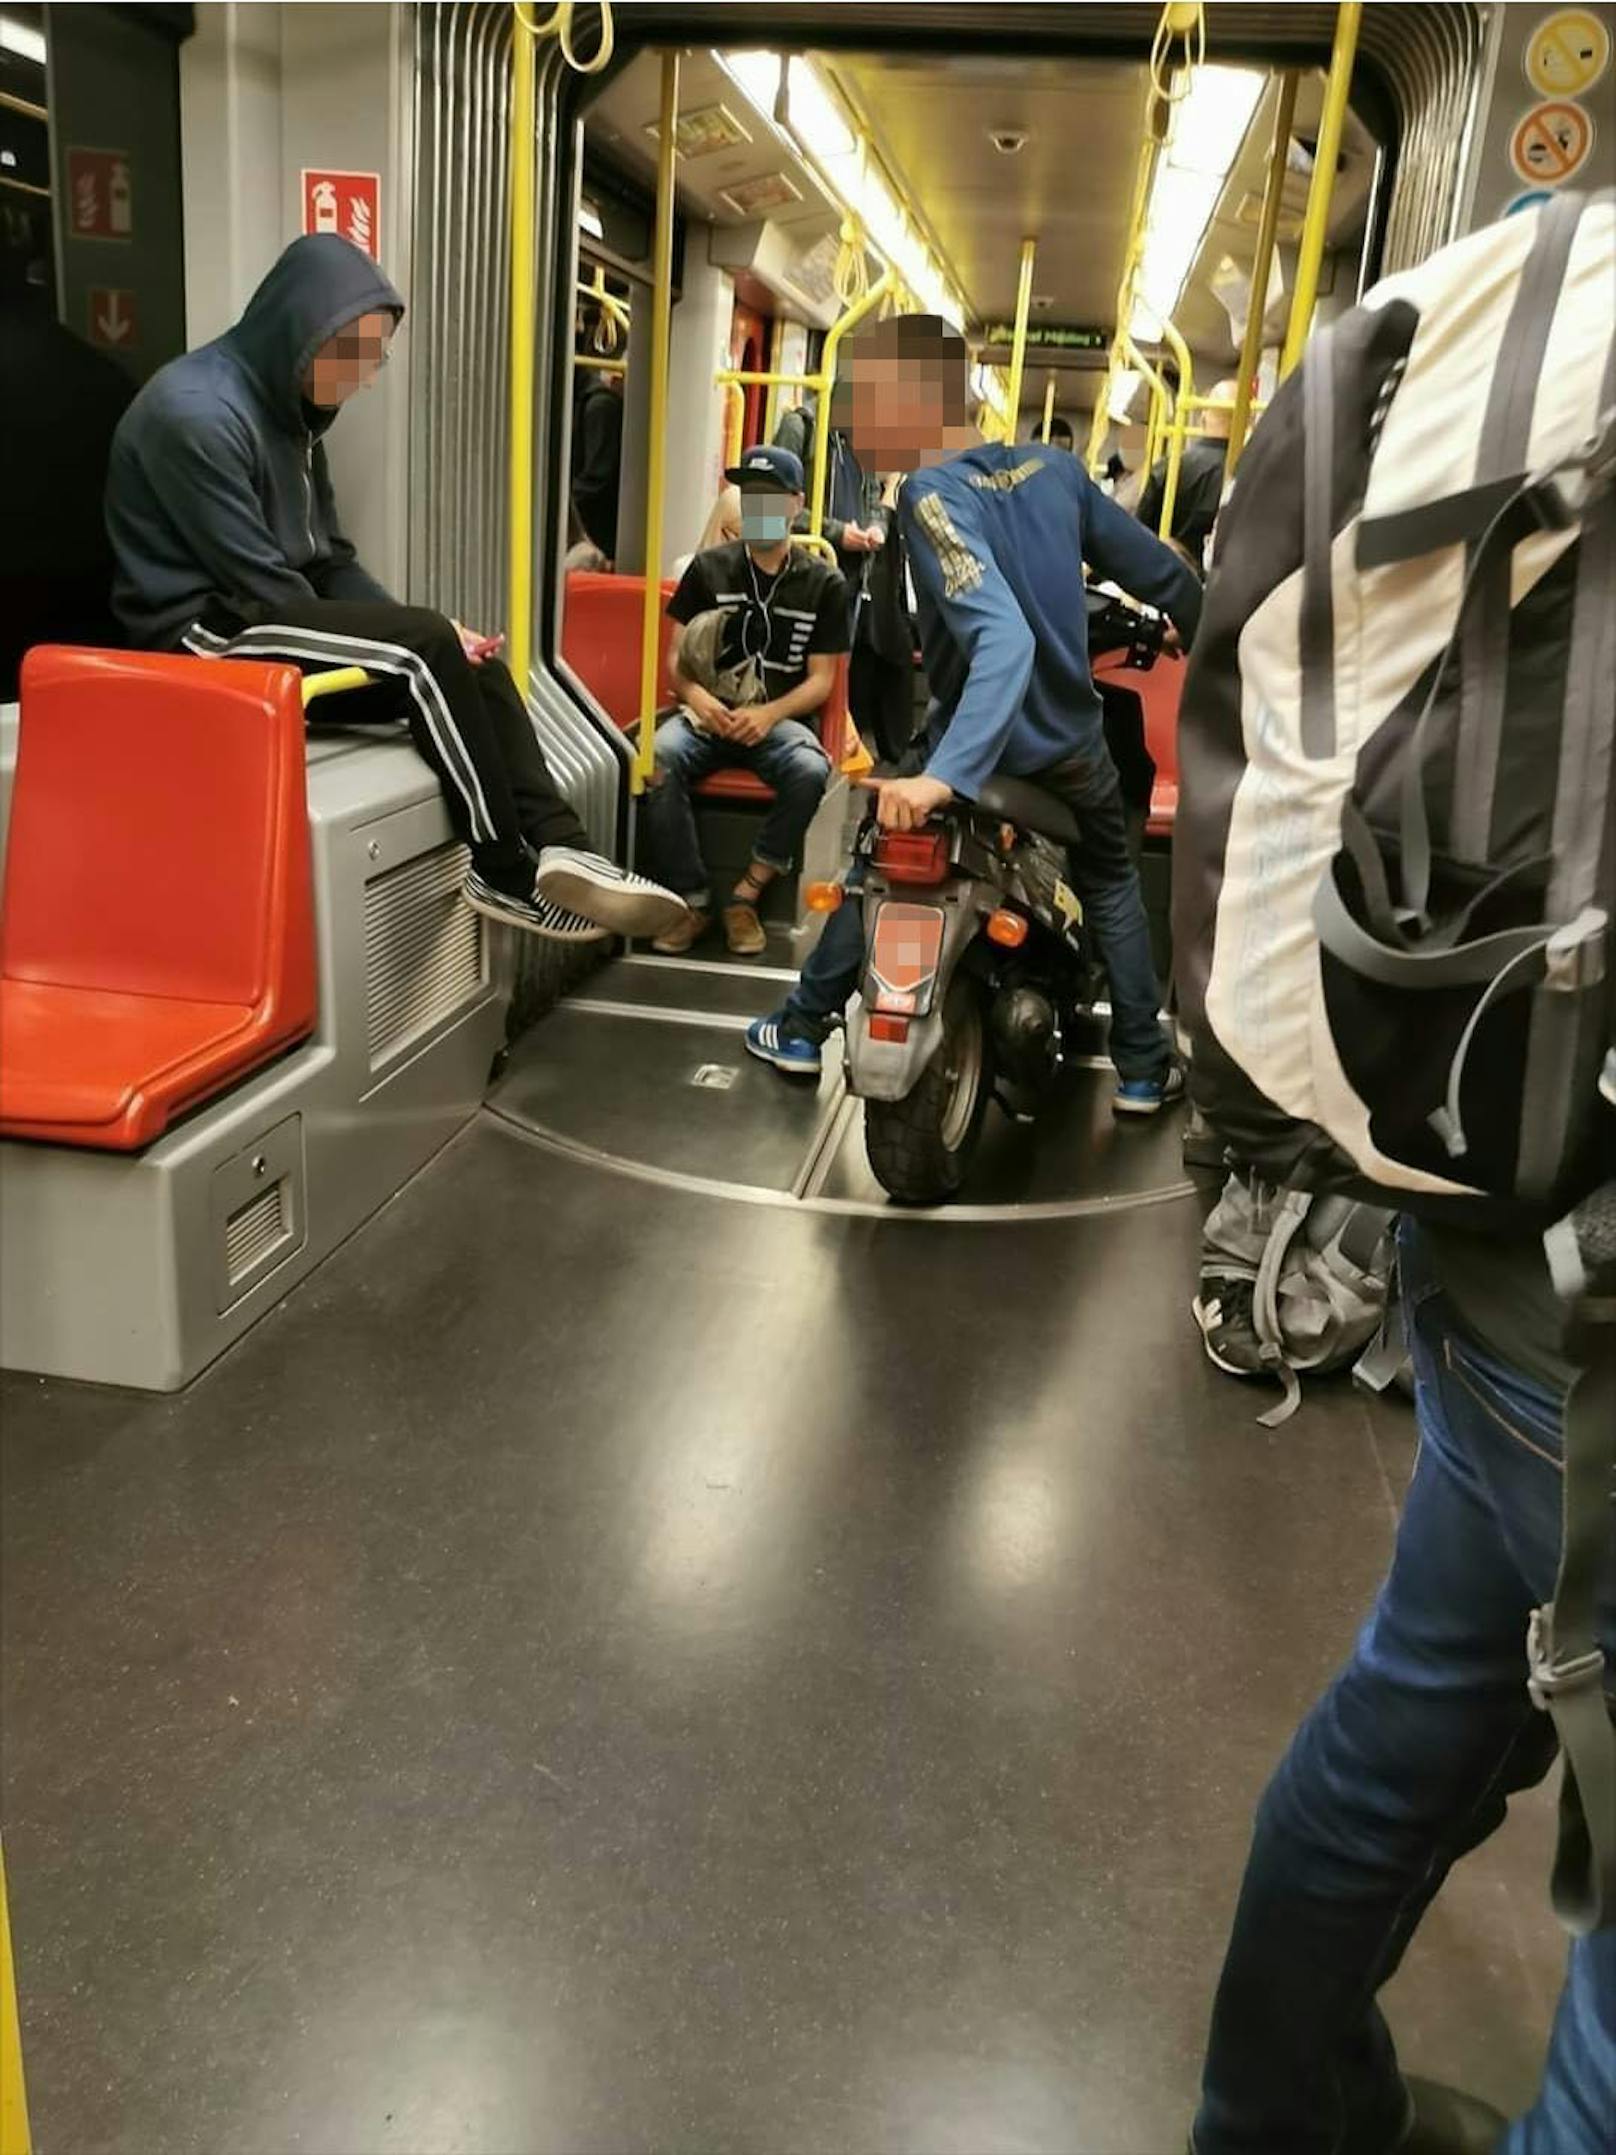 Ein "Heute"-Leser entdeckte den Jugendlichen auf dem Moped.